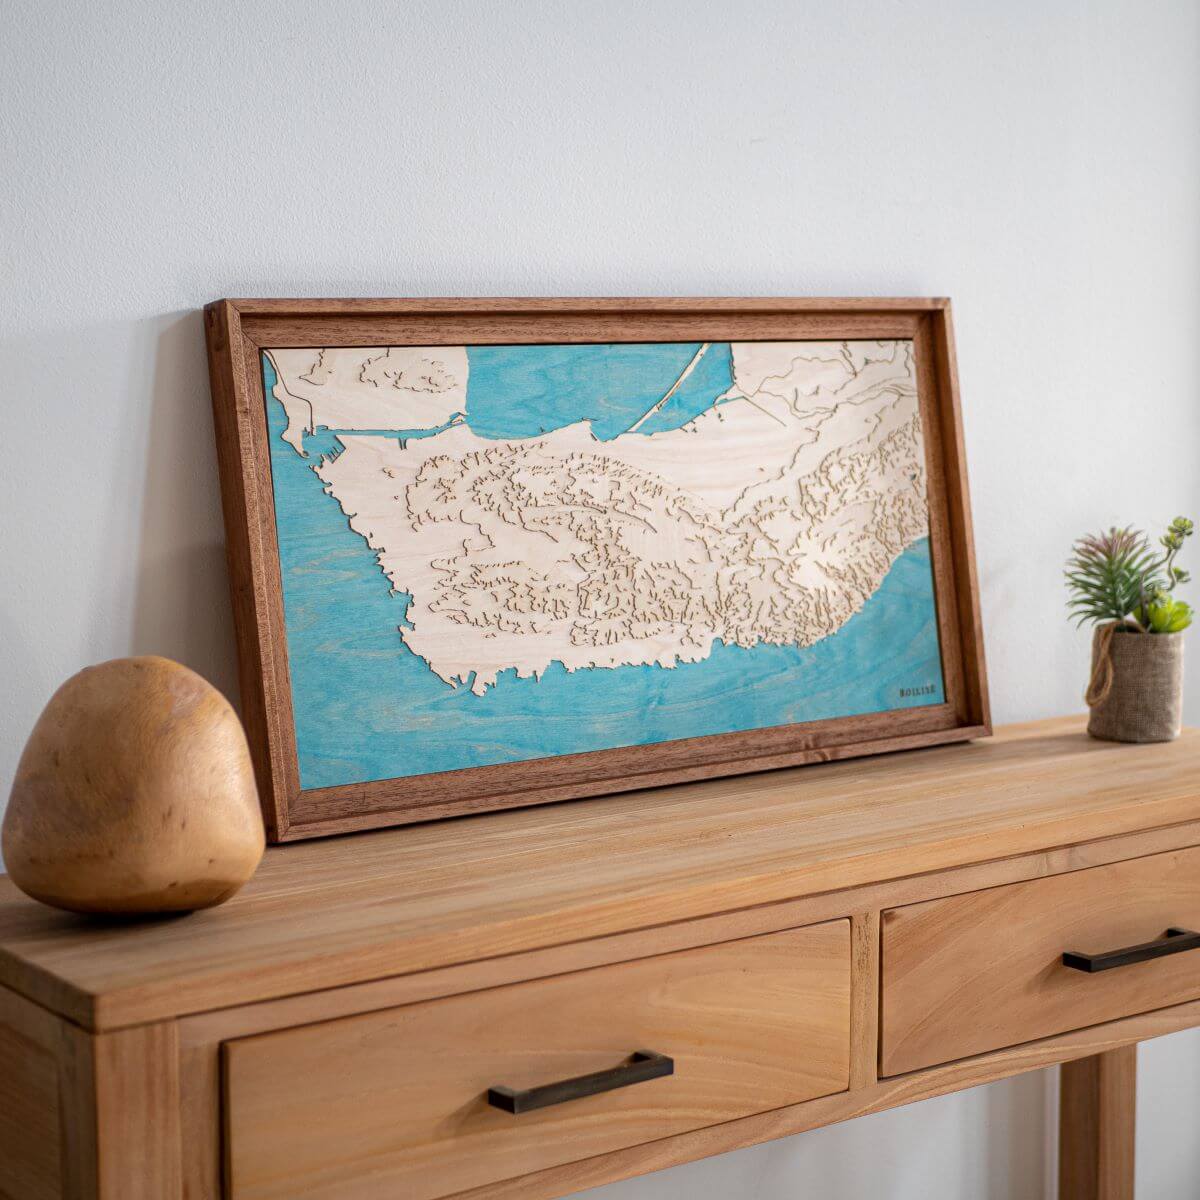 Décoration originale en bois avec la carte de la côte bleue